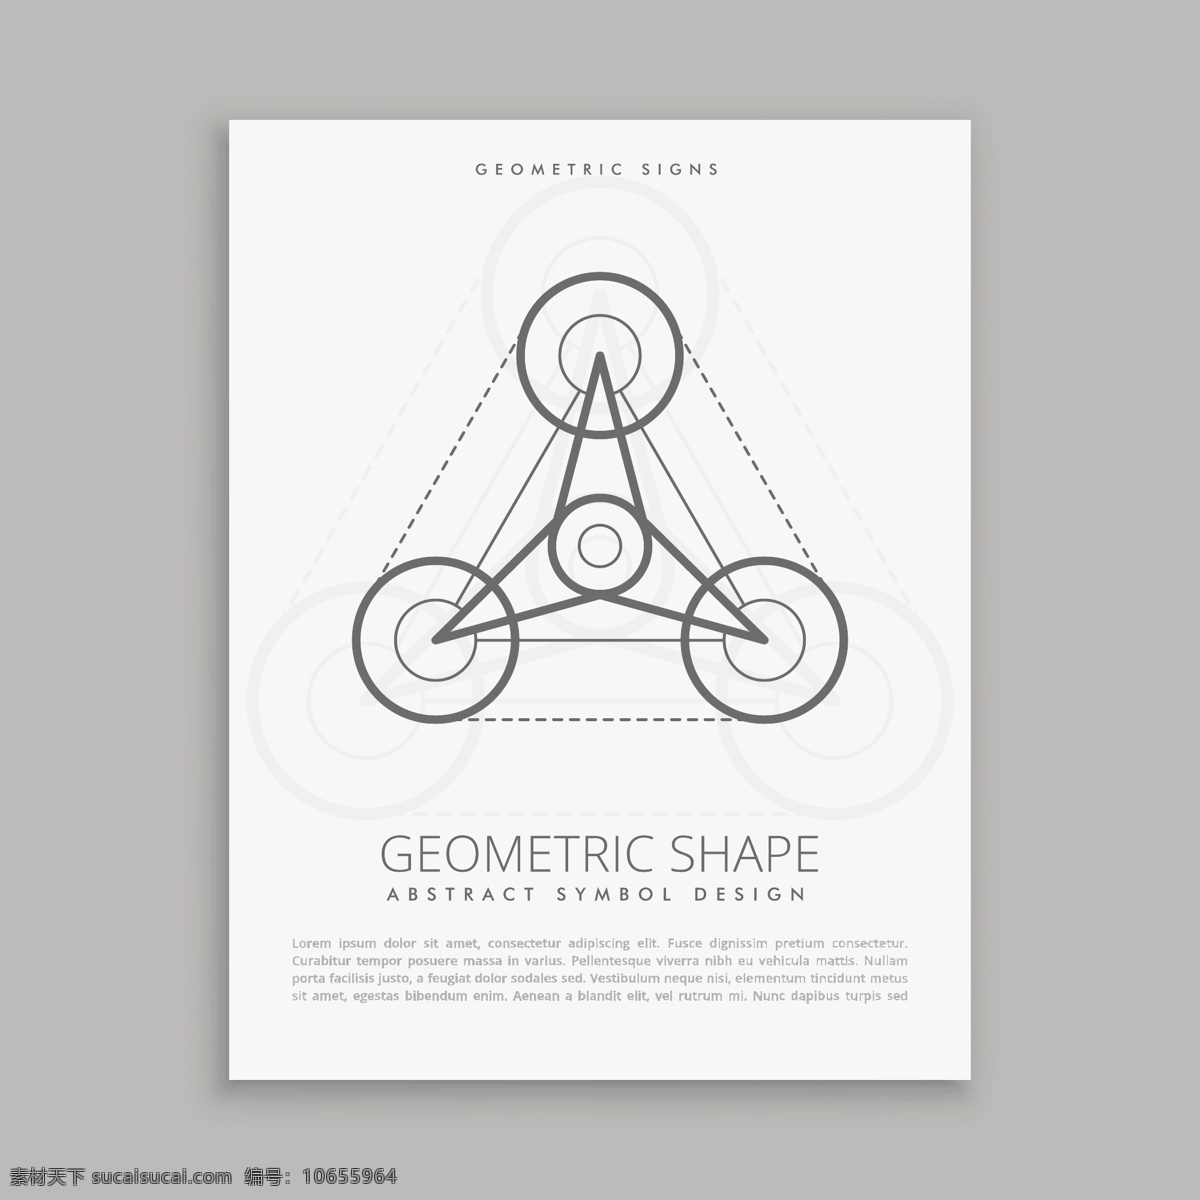 圣刀海报 海报 传单 抽象 卡片 几何 线条 形状 宗教 符号 未来 元素 几何形态 精神 星象 抽象的形状 人物 哲学 白色